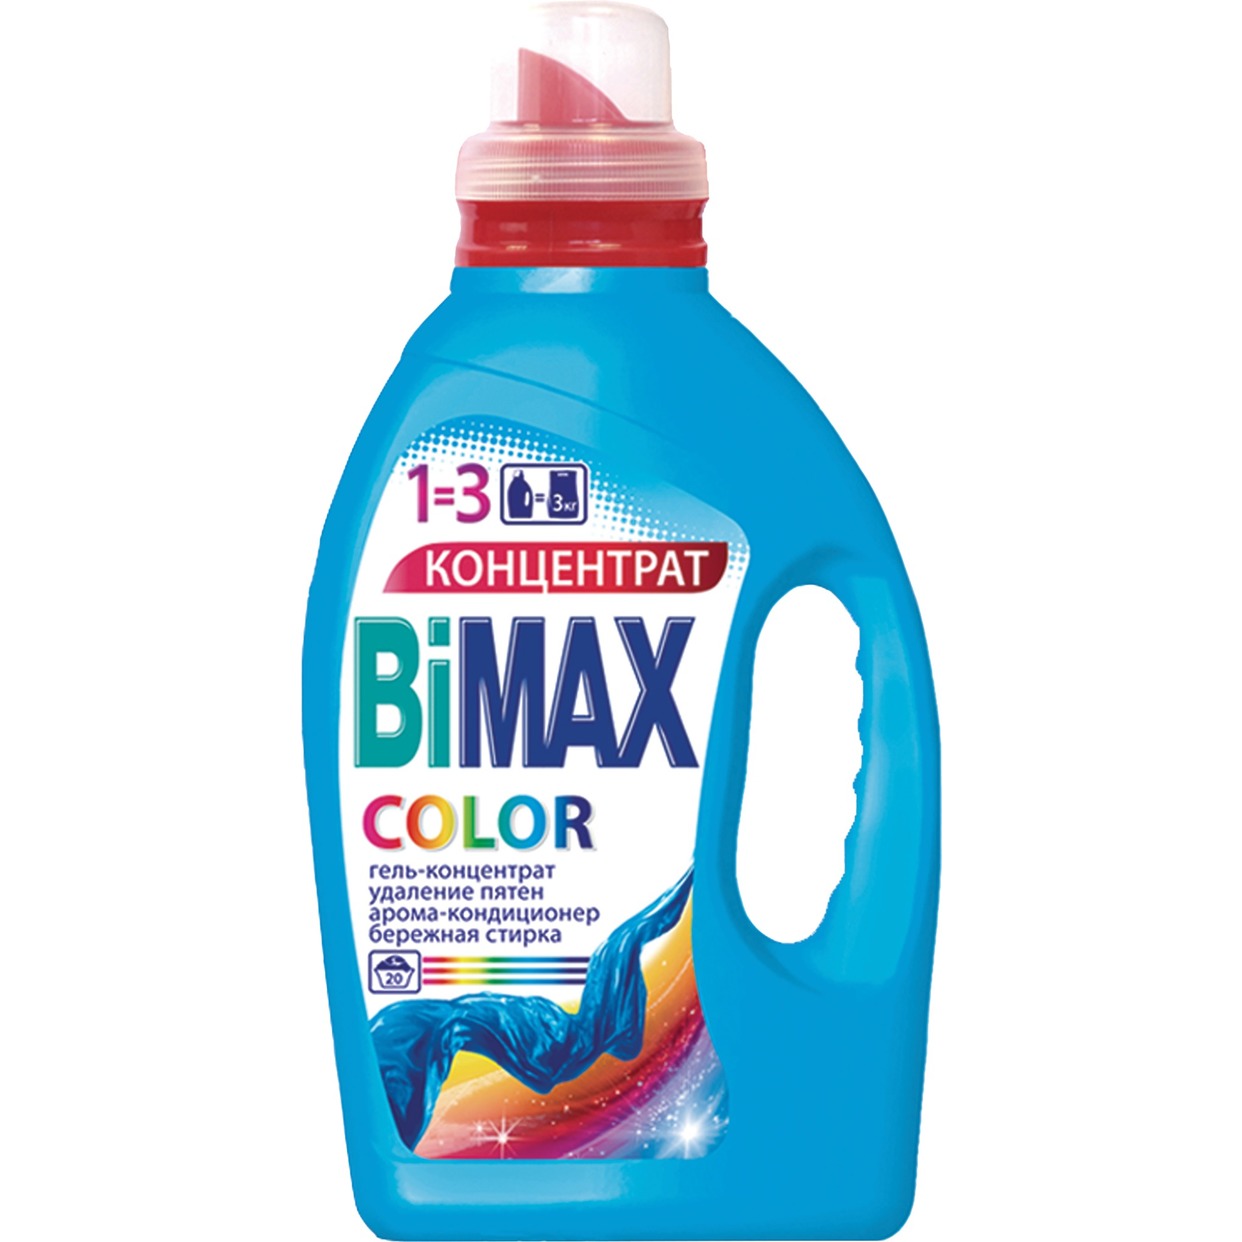 Гель для стирки Bimax, Color, 1,5 л по акции в Пятерочке